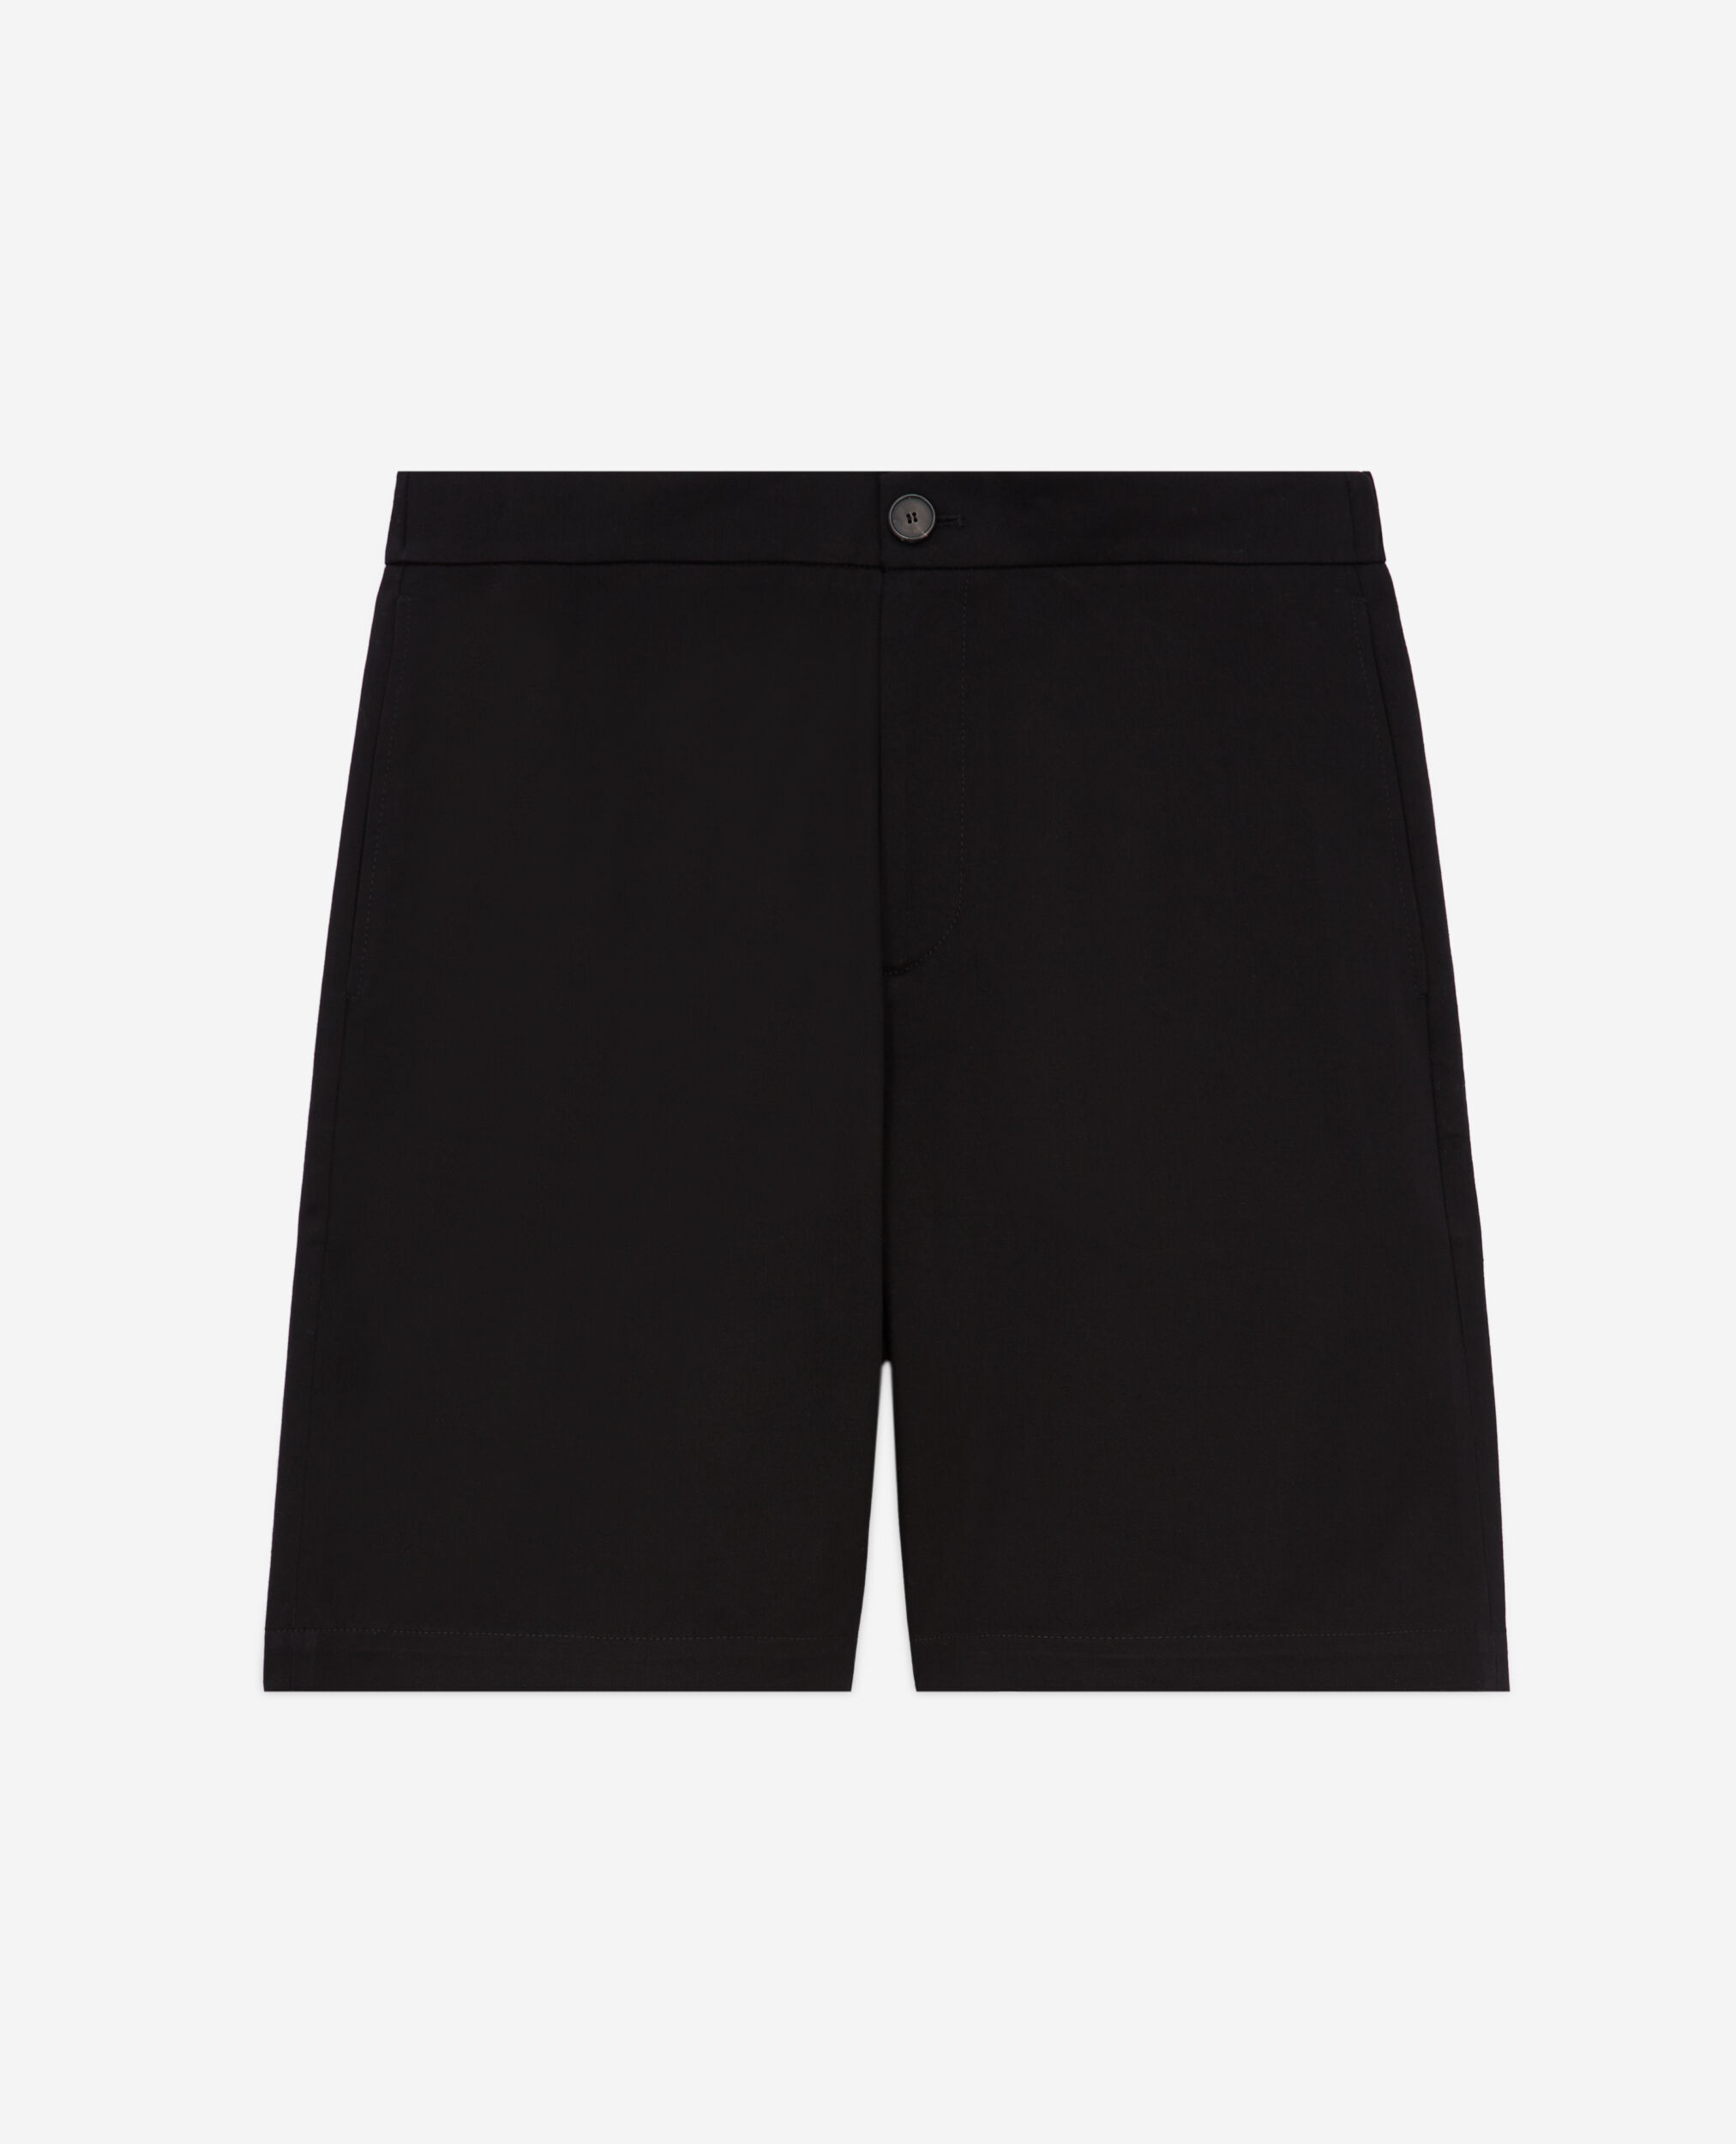 Black shorts, BLACK, hi-res image number null